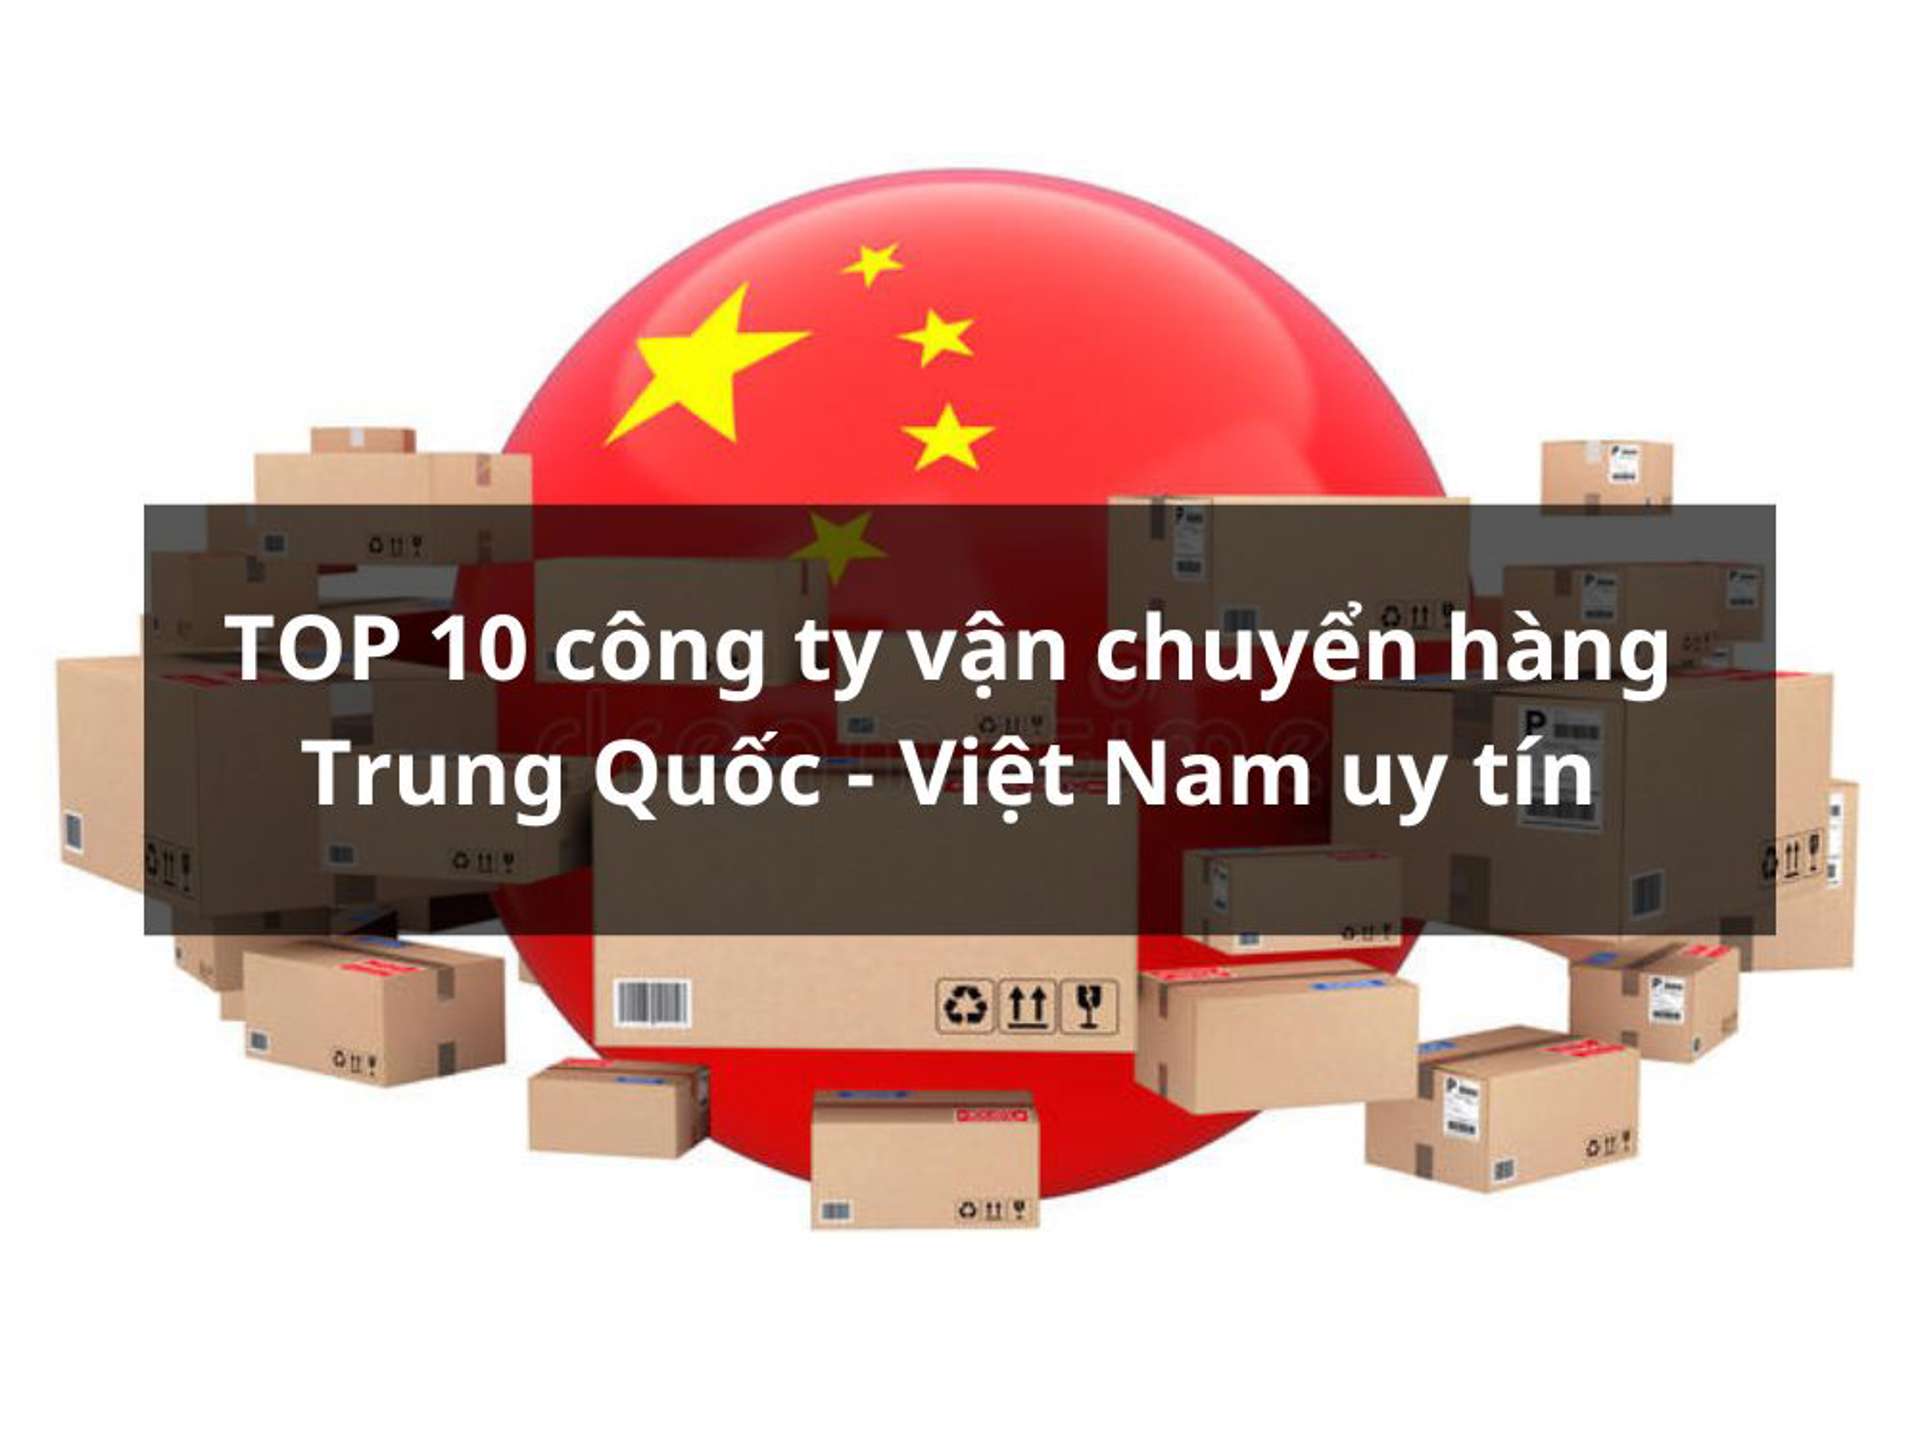 TOP 10 công ty vận chuyển hàng Trung Quốc - Việt Nam uy tín